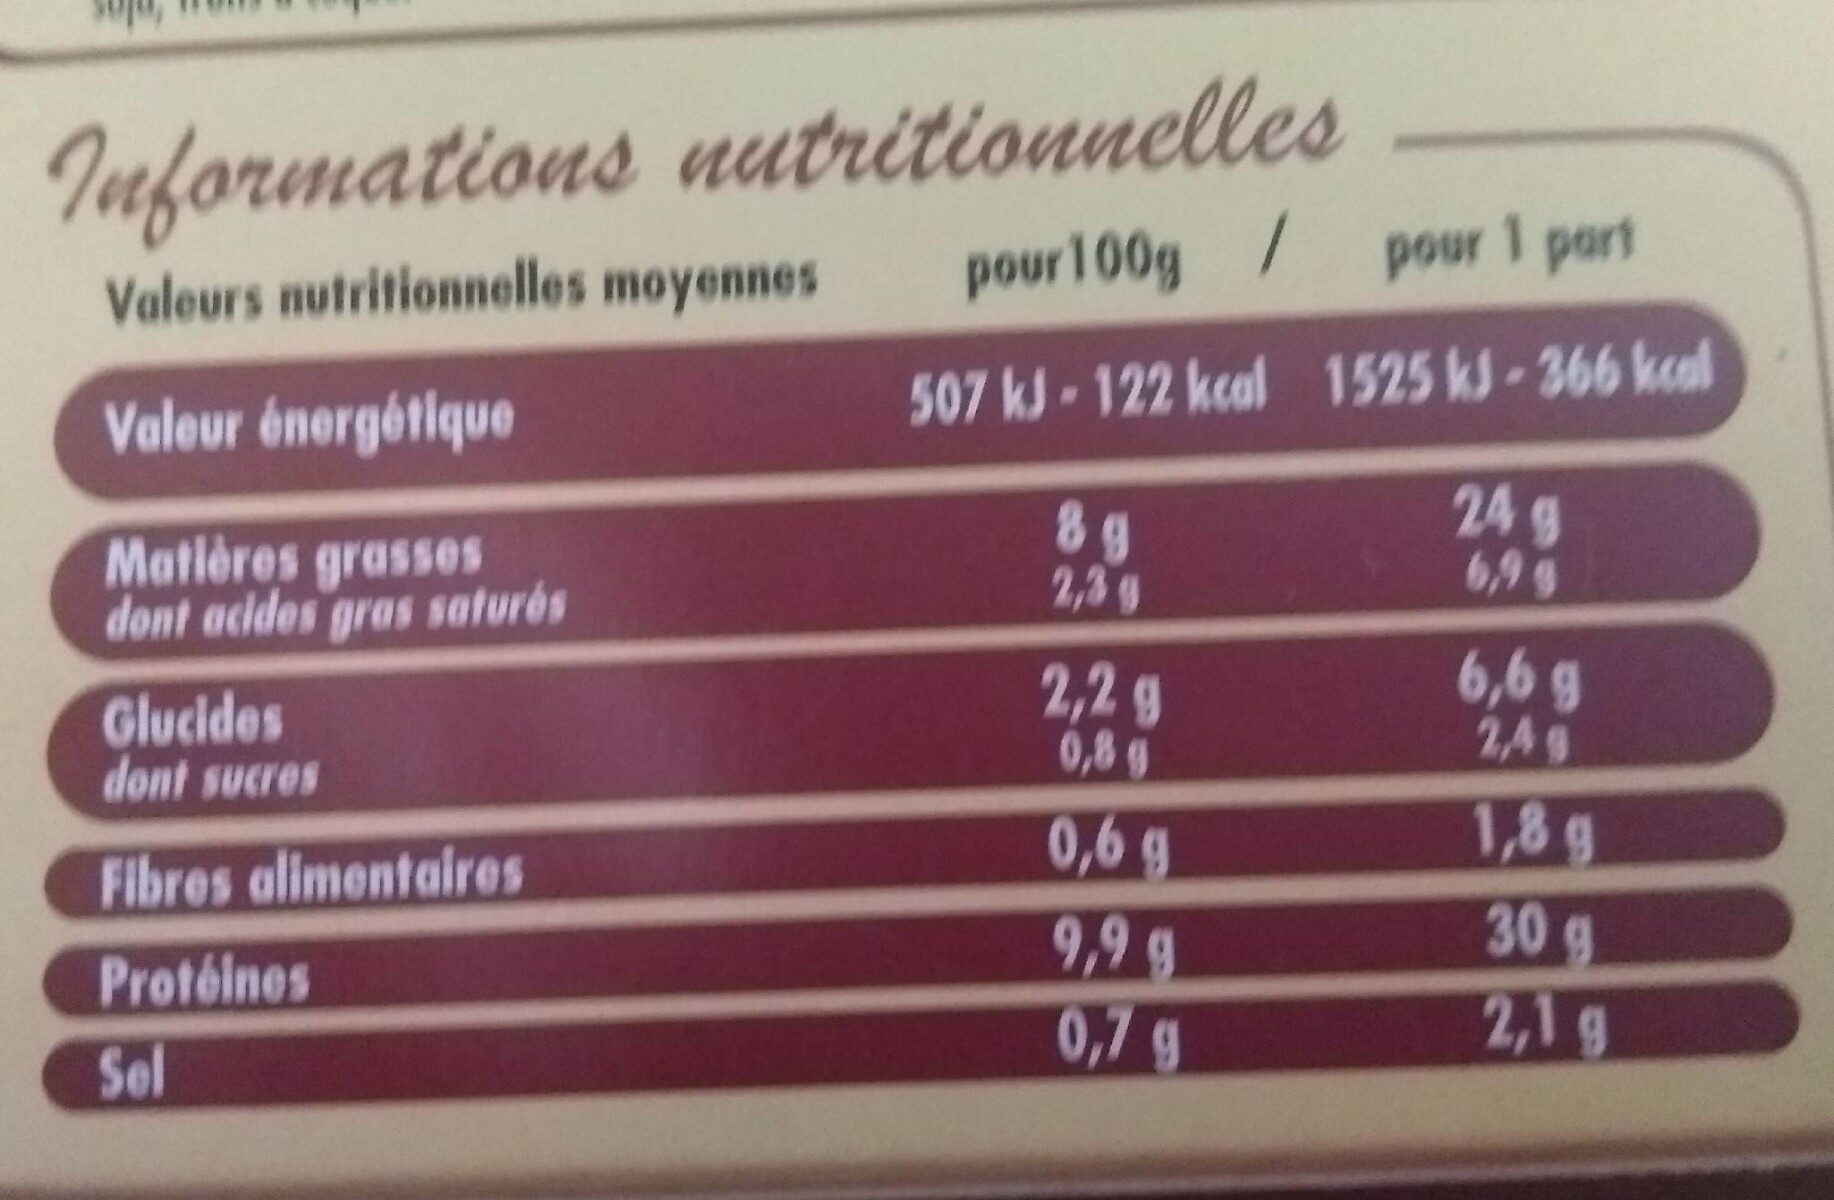 Langue de boeuf sauce madère - Nutrition facts - fr